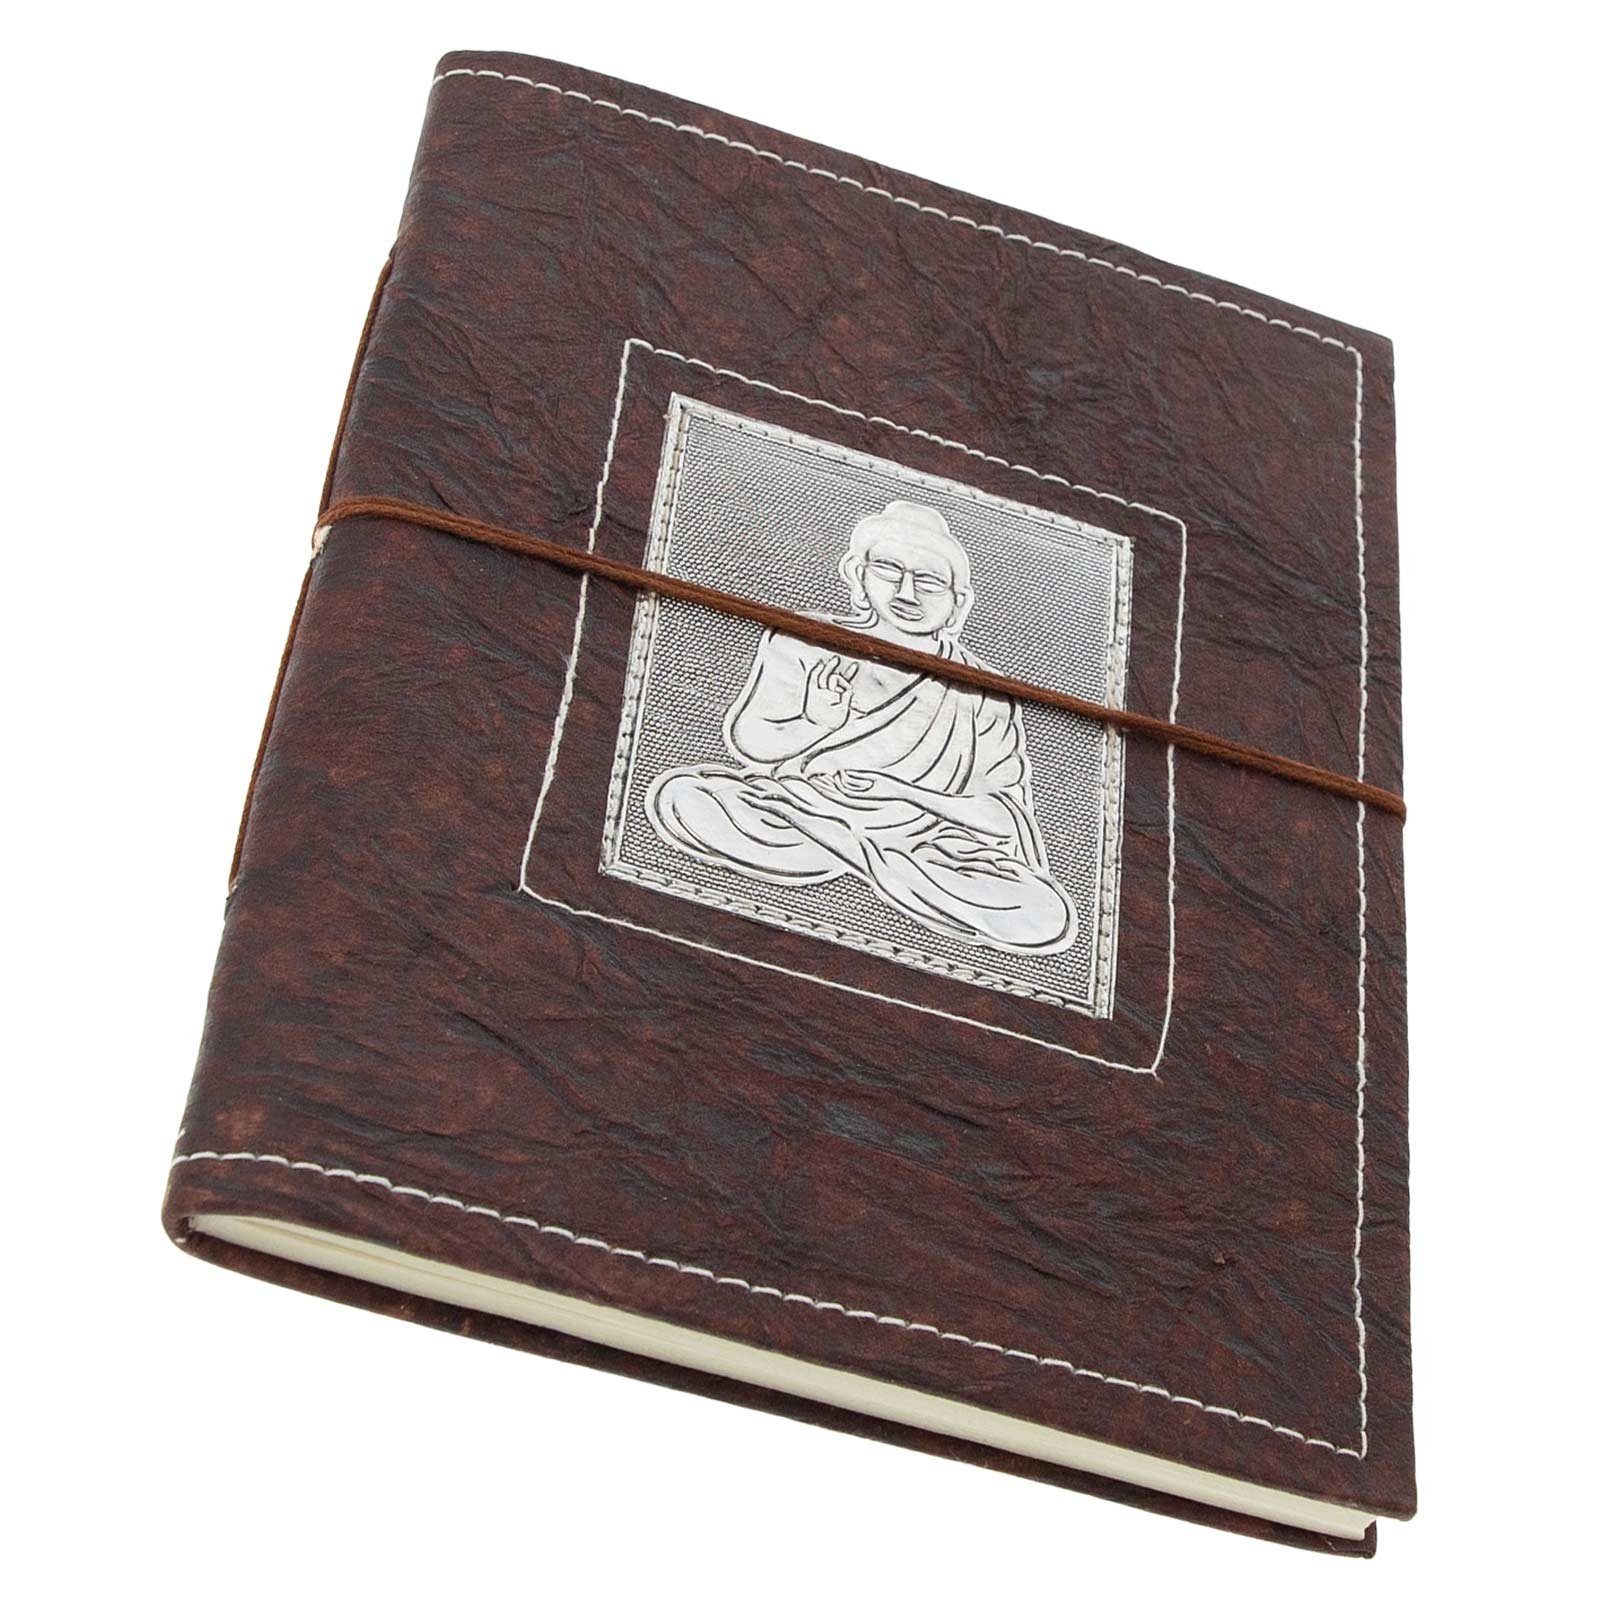 Notizbuch Buddha Tagebuch MAGIE Tagebuch UND XL handgefertigt KUNST 25x18cm Poesiealbum